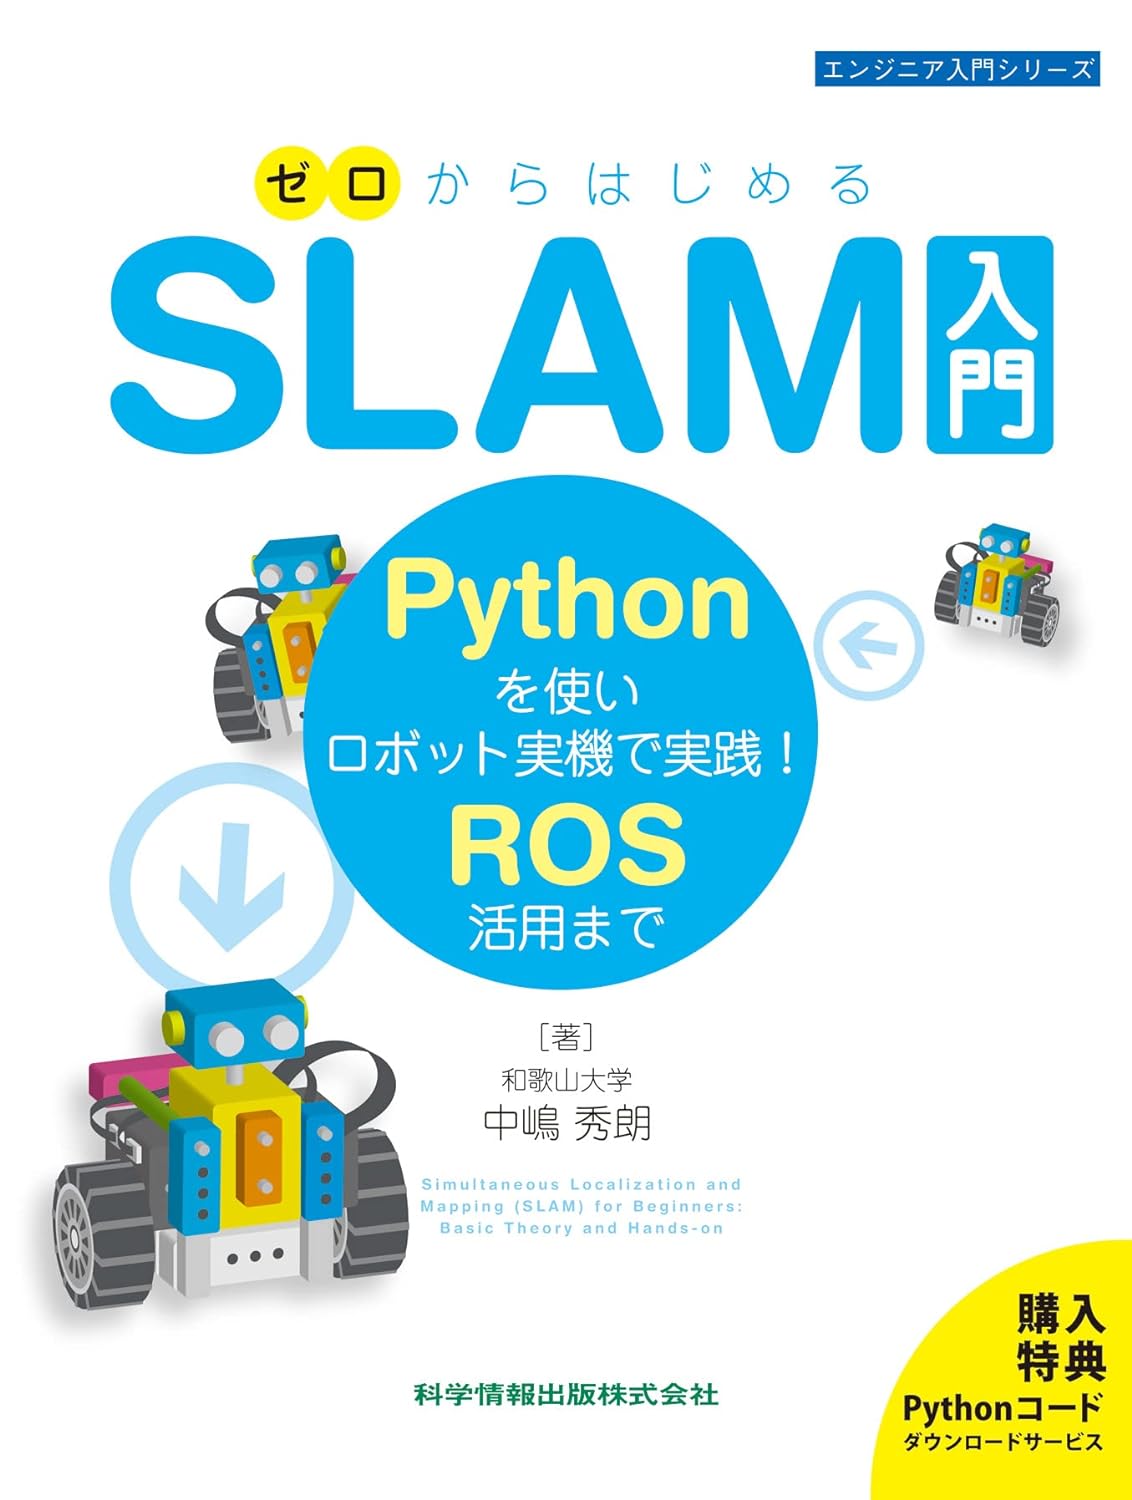 ゼロからはじめるSLAM入門-Pythonを使いロボット實機で實踐! ROS活用まで- (エンジニア入門シリ-ズ110)